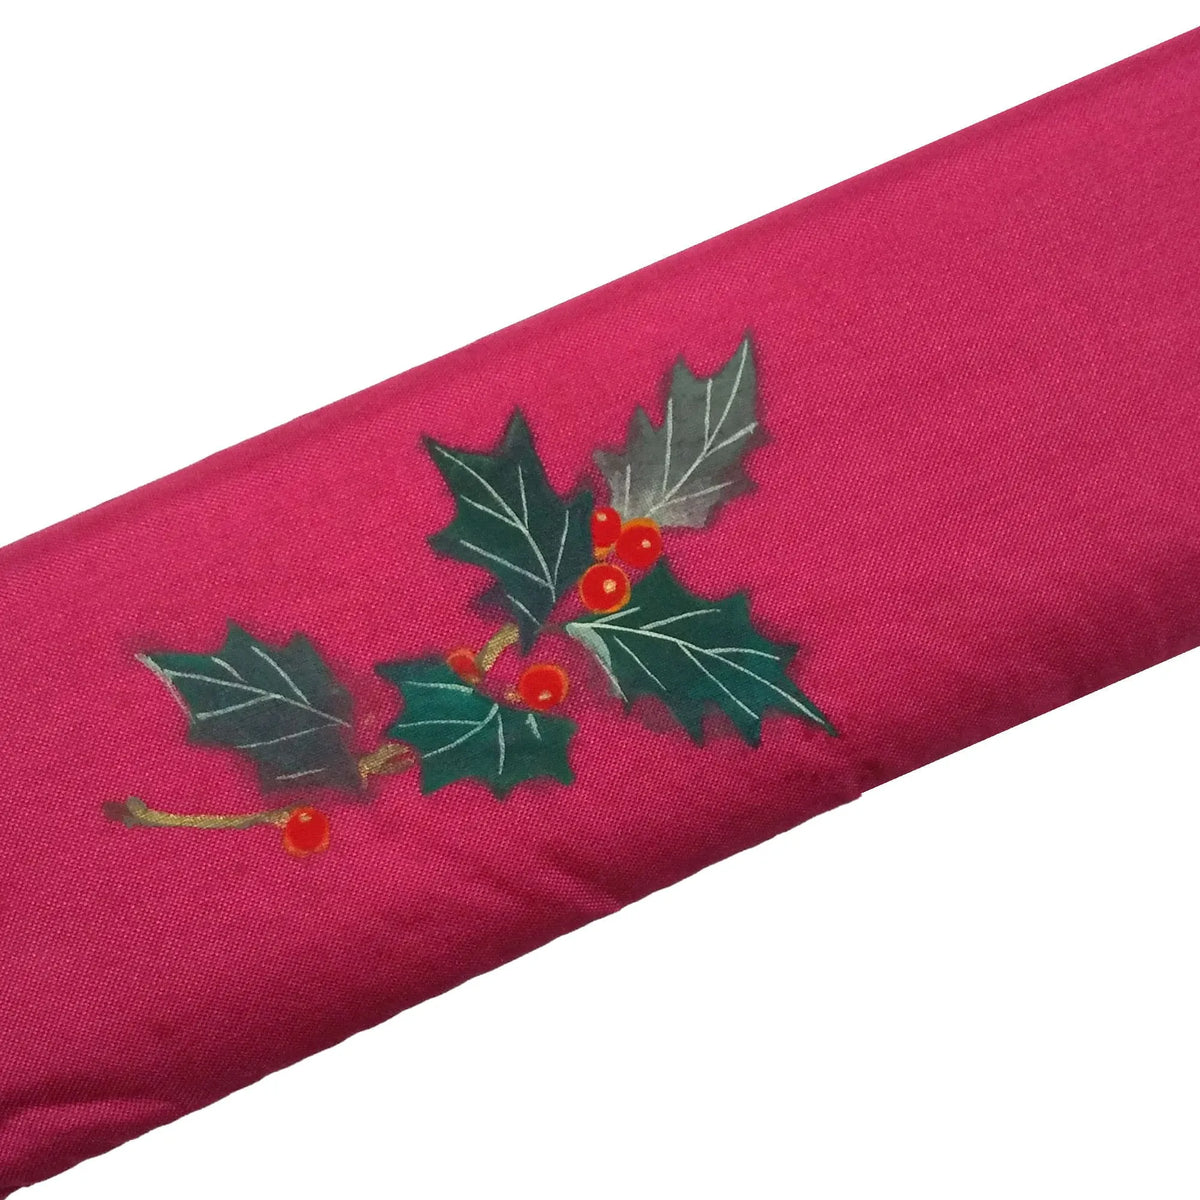 Eventail en soie, illustration d'une couronne de Noël sur un éventail en soie, frais peints à la main + éventail en soie.